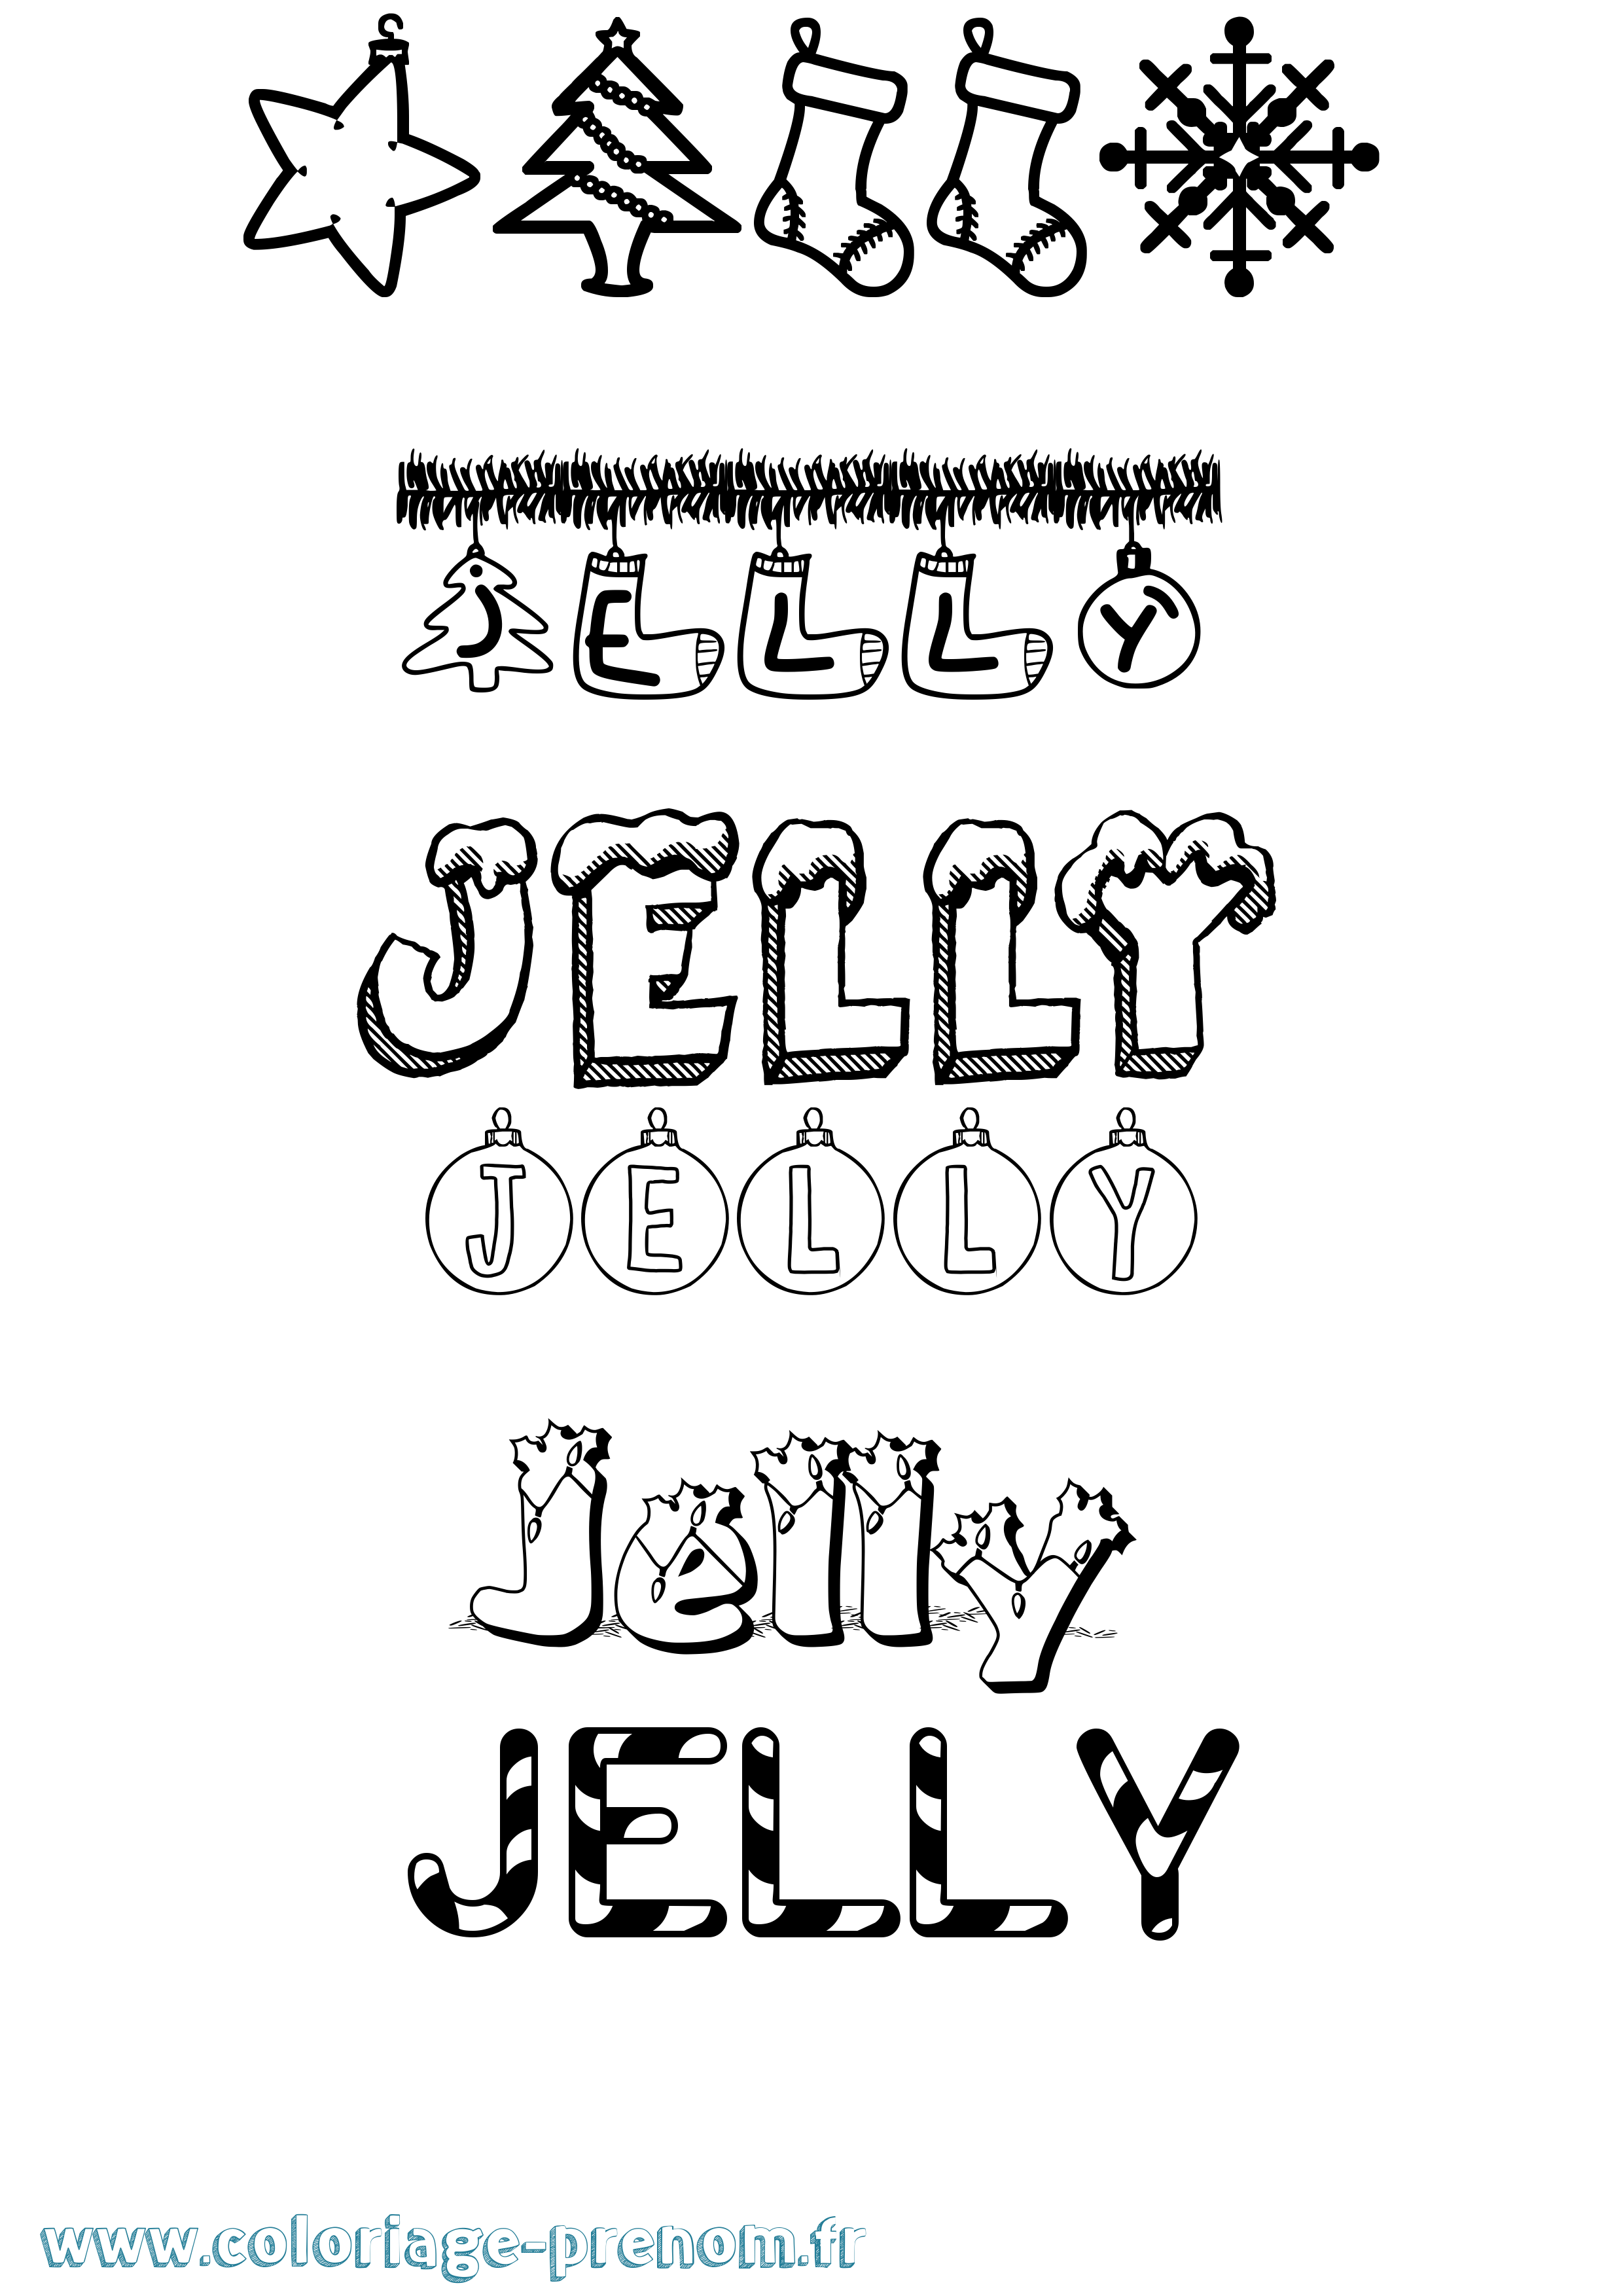 Coloriage prénom Jelly Noël